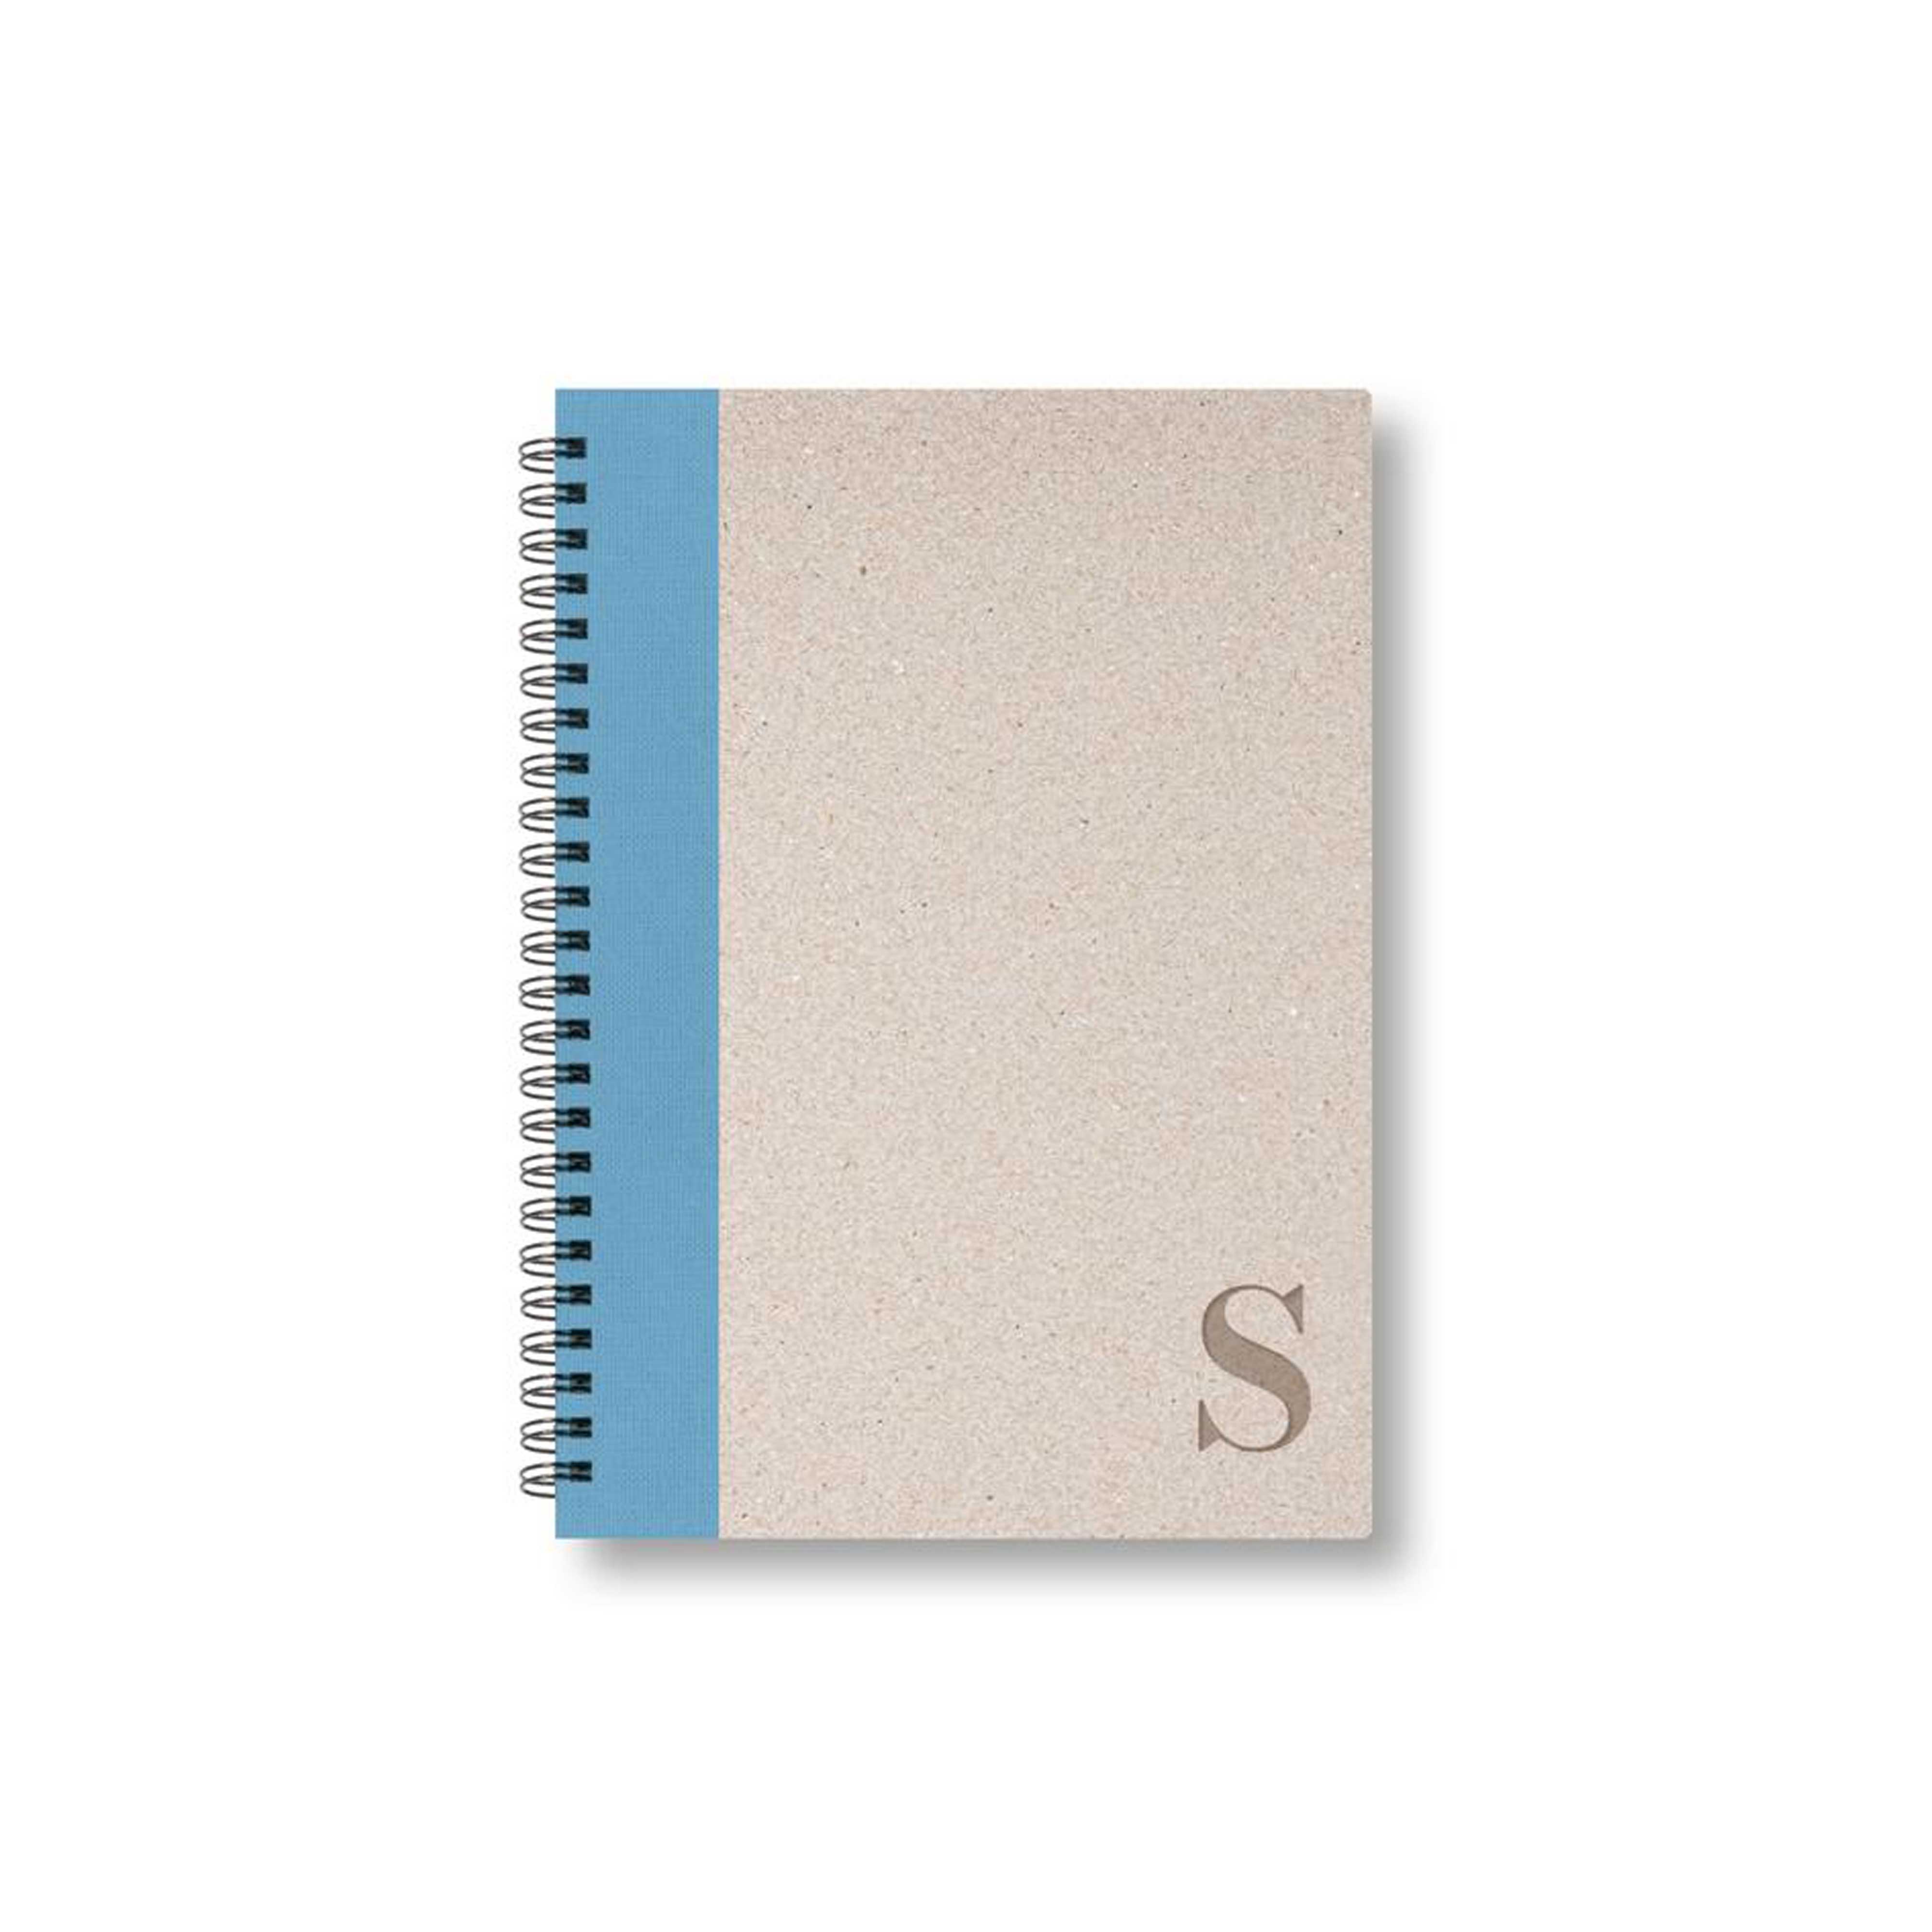 BOBO Zápisník, B6, čistý, světle modrý, konfiguruj si obálku